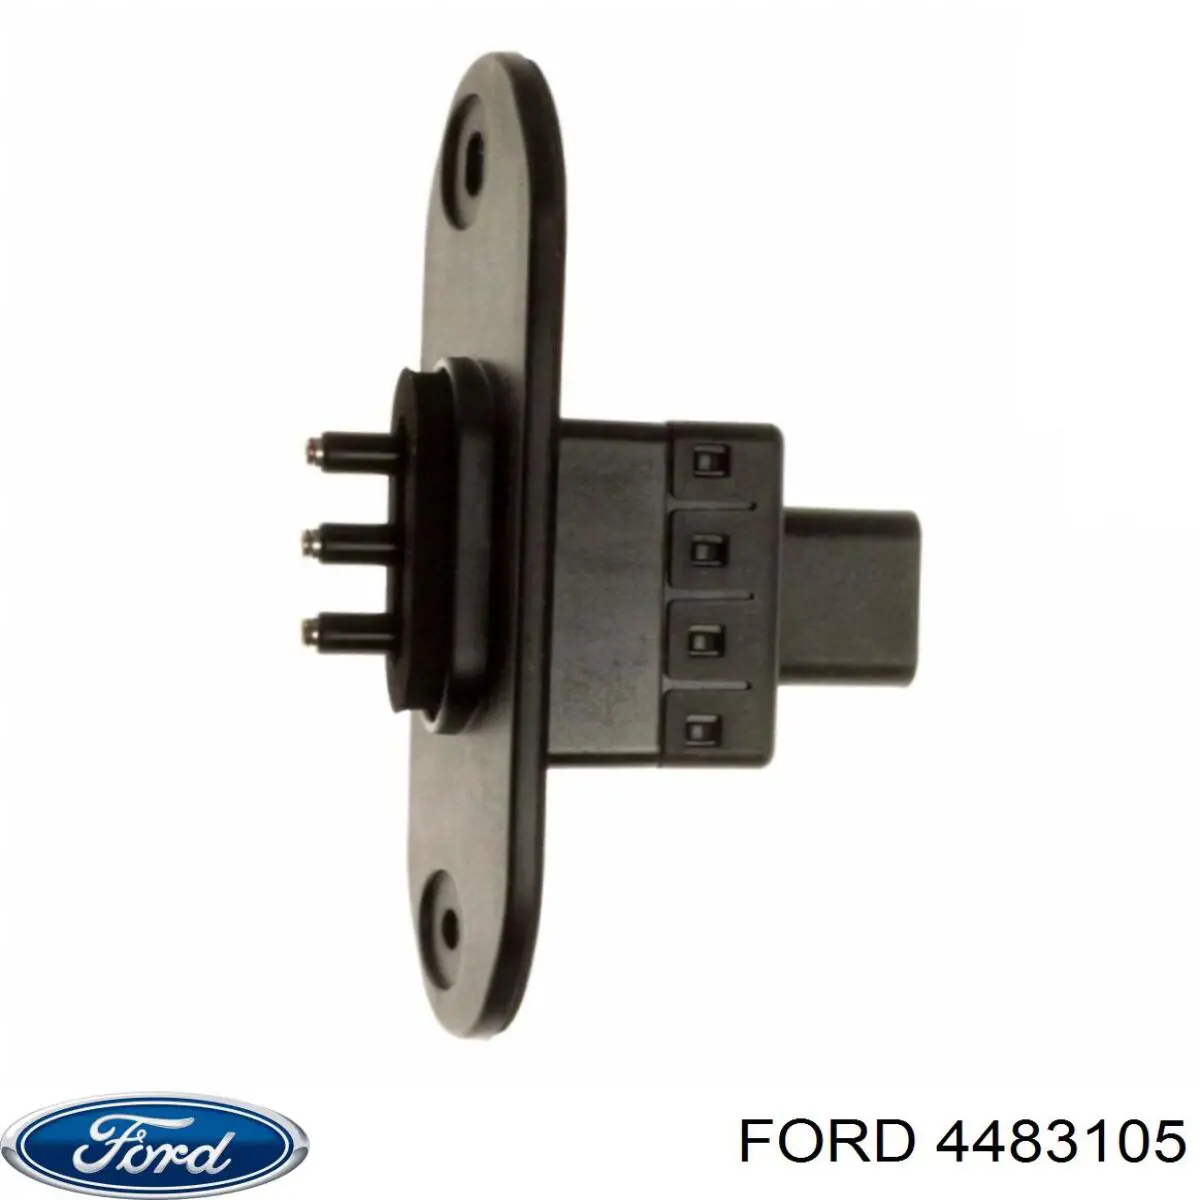 4420422 Ford sensor, interruptor de contacto eléctrico para puerta corrediza, en carrocería